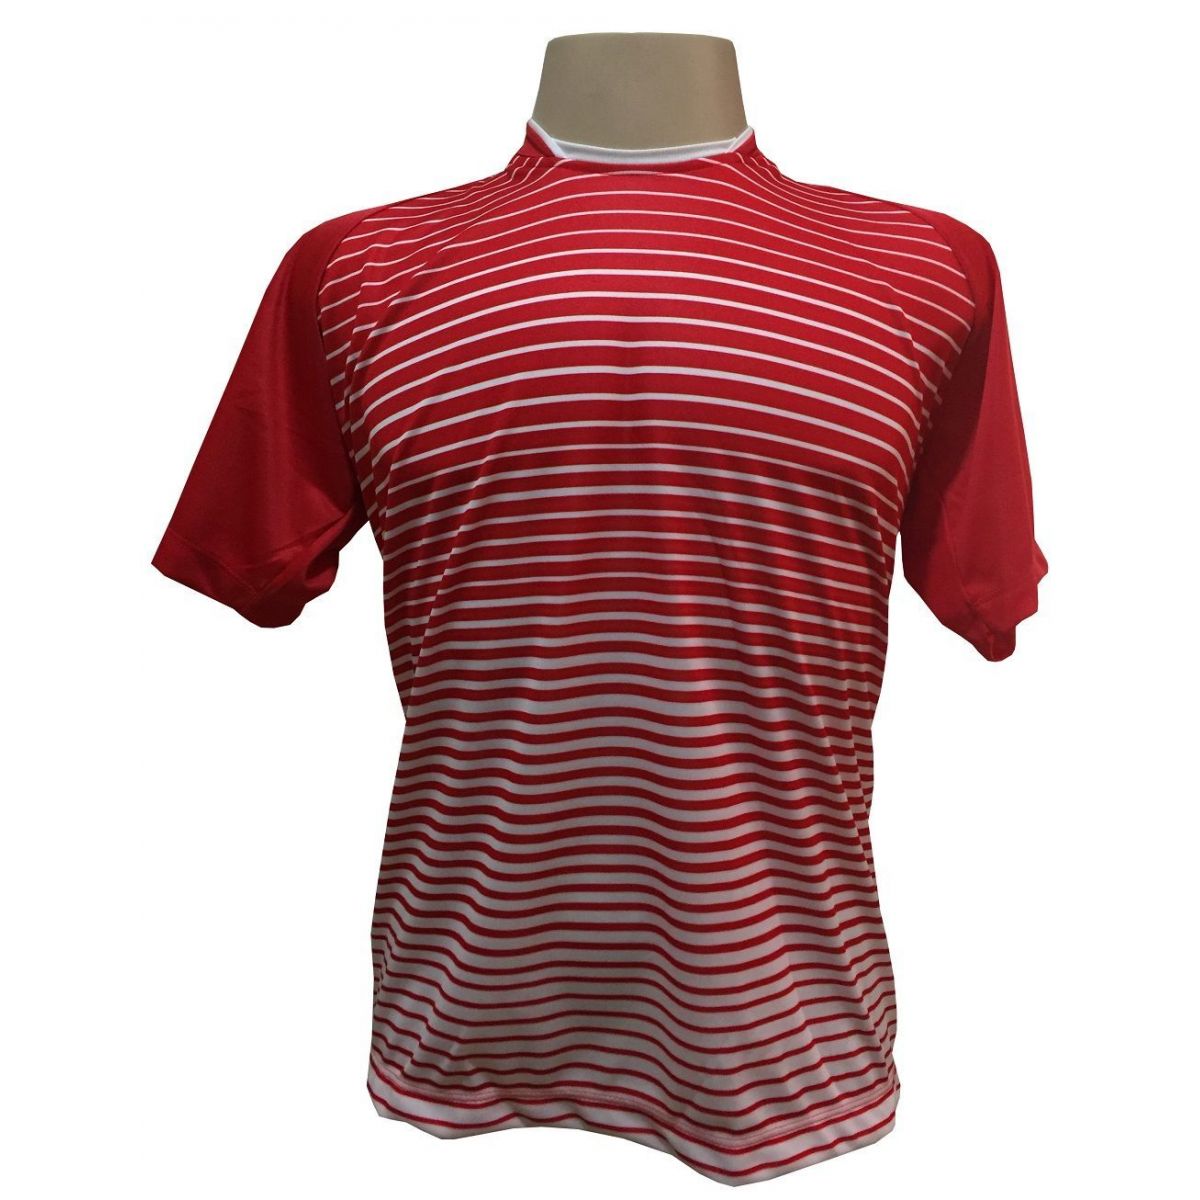 Uniforme Esportivo com 12 camisas modelo City Vermelho/Branco + 12 calções modelo Madrid Vermelho + Brindes